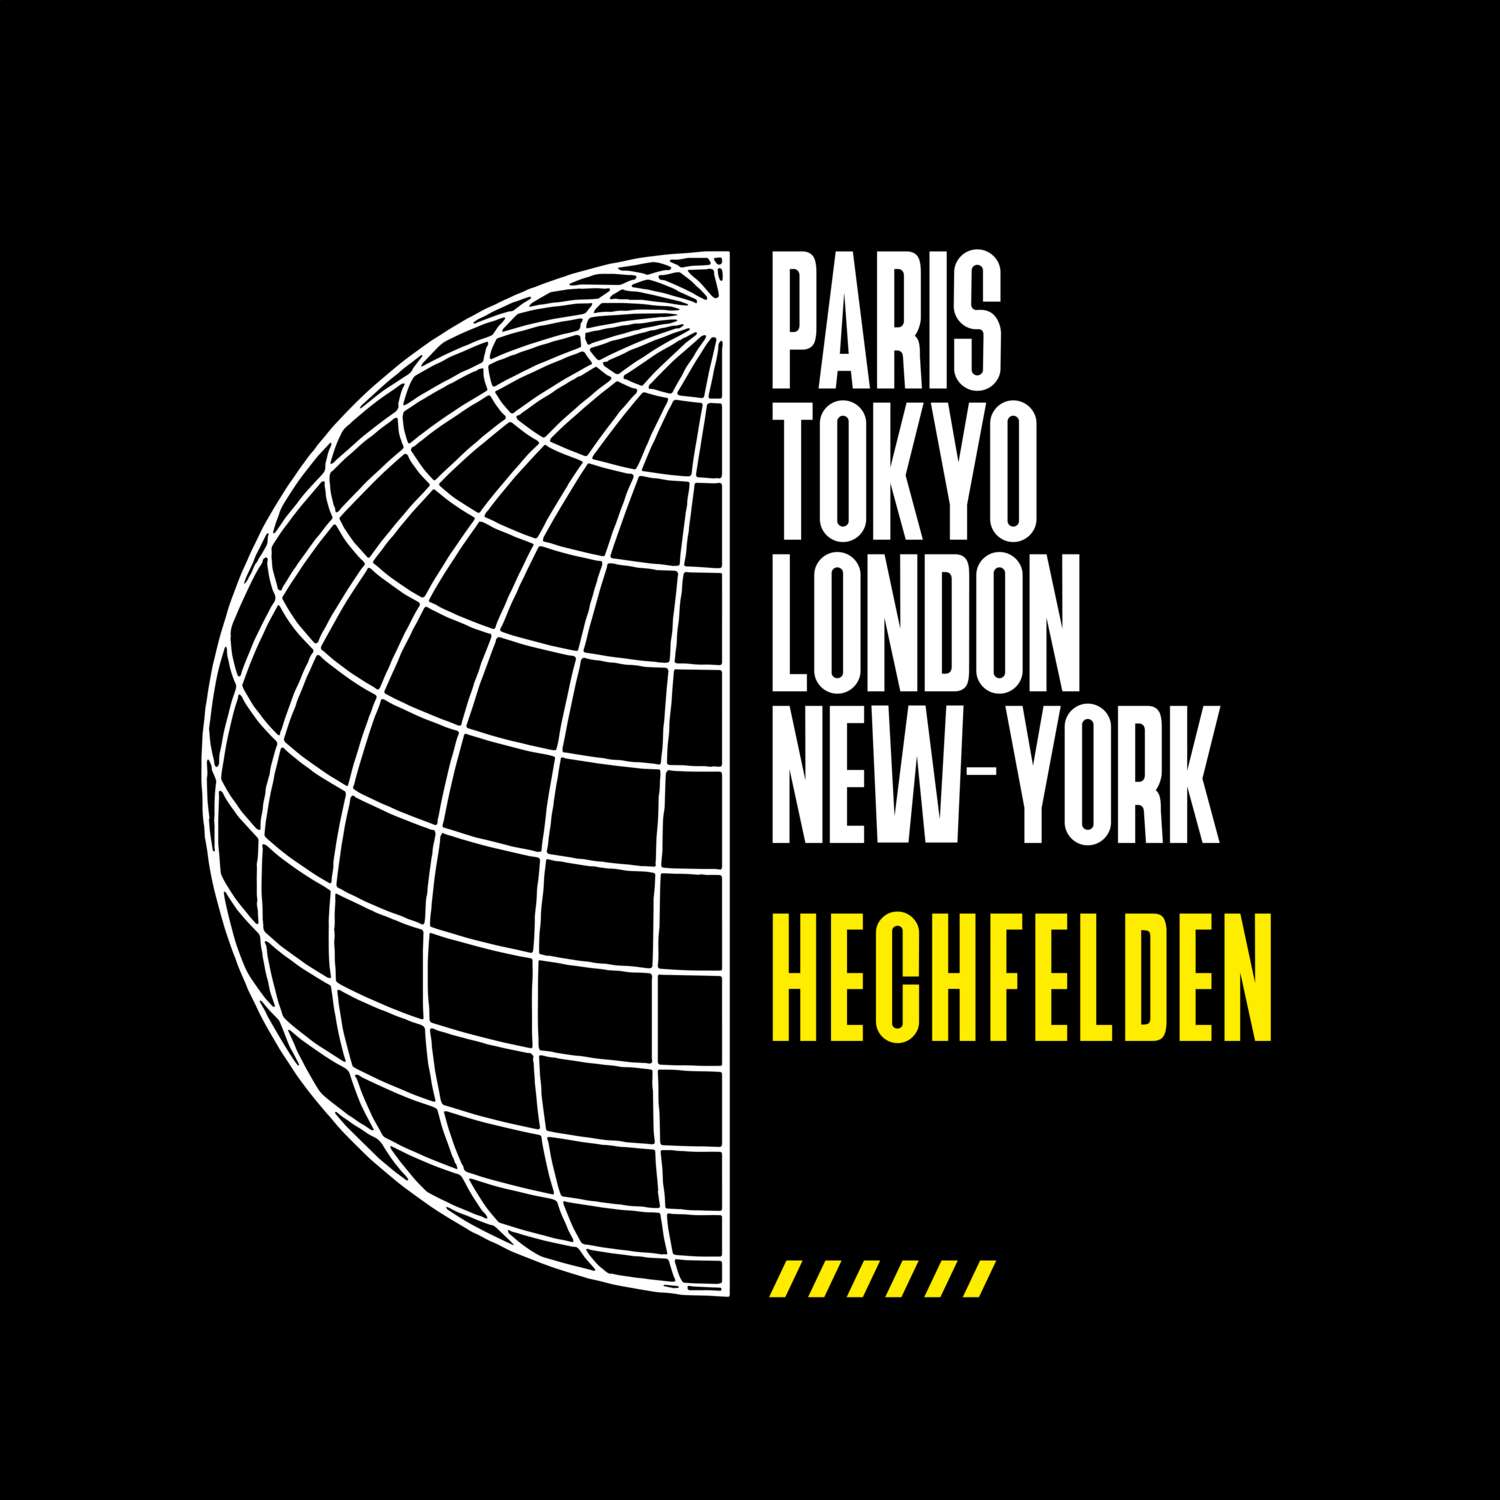 Hechfelden T-Shirt »Paris Tokyo London«